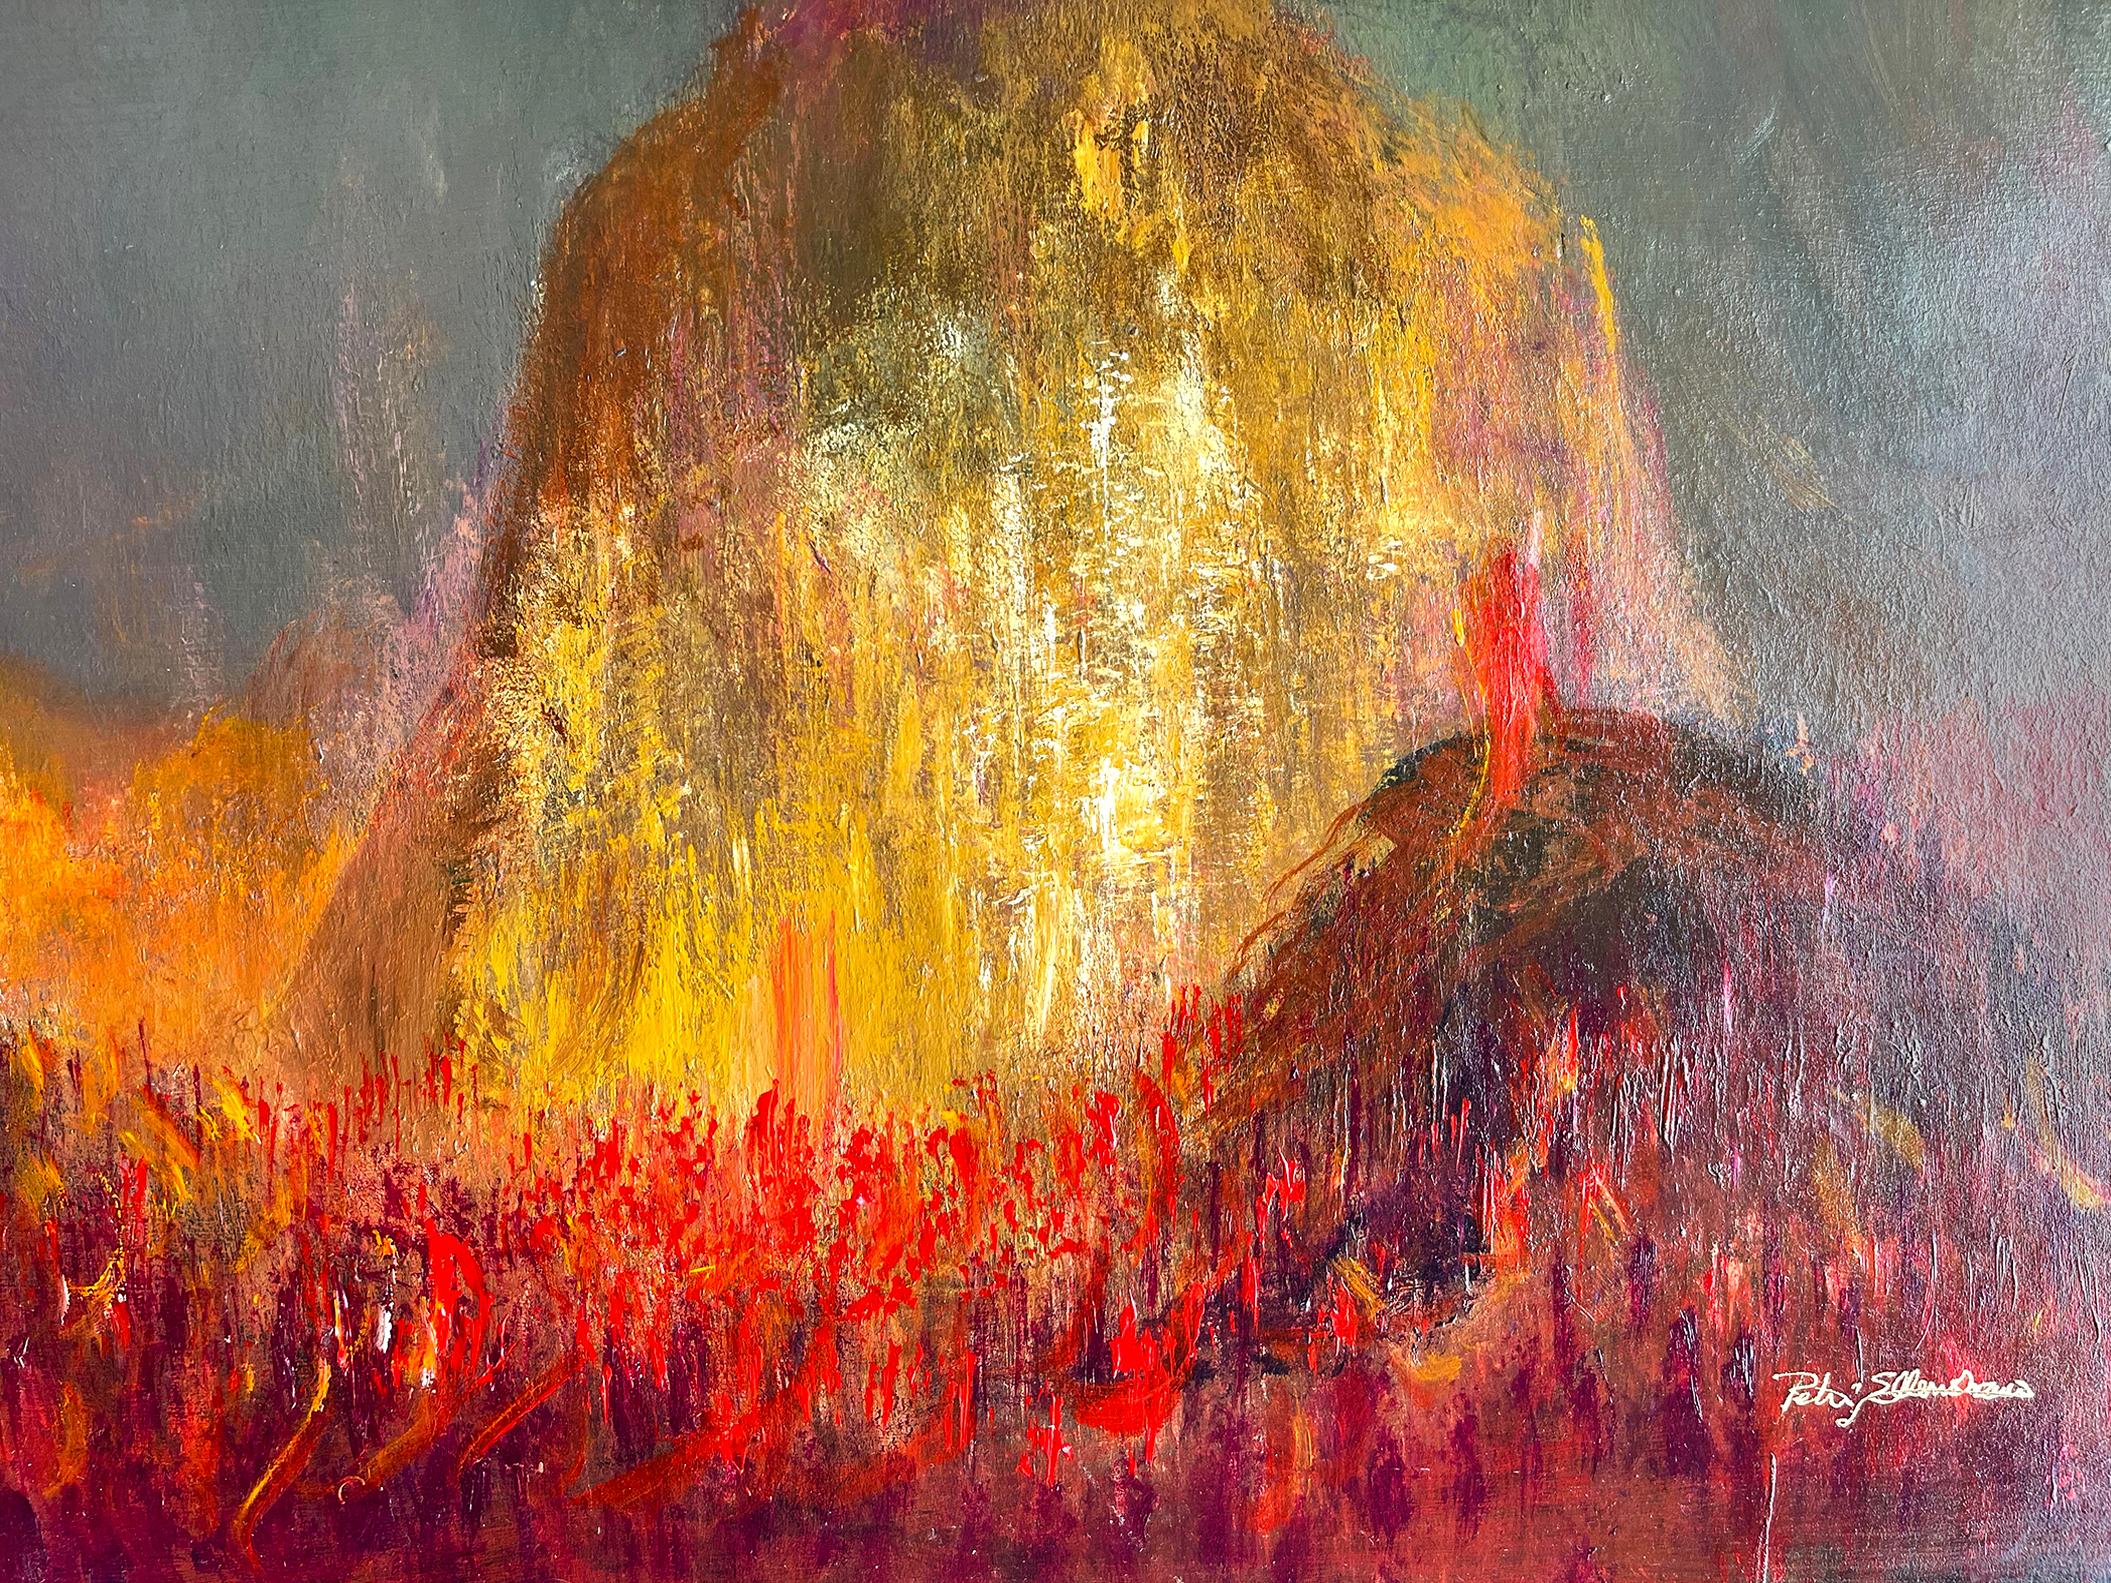 Éruption de volcan - Foulard de lave explosif de l'enfer - Painting de Peter Ellenshaw